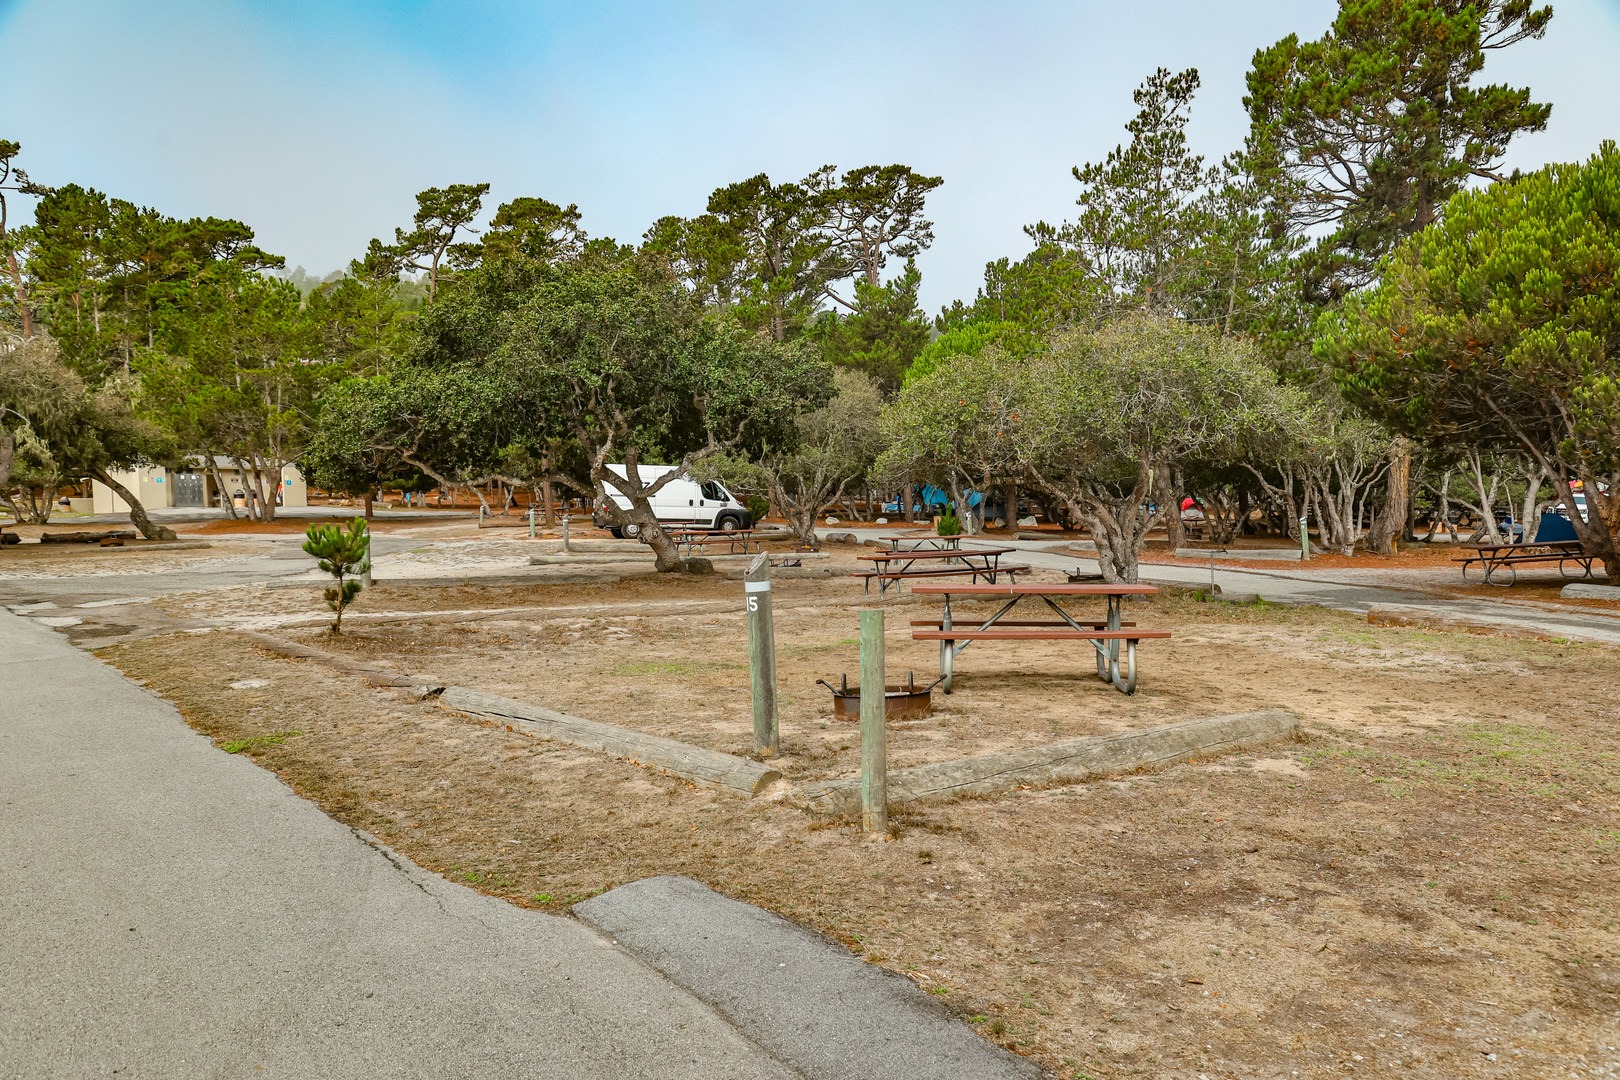 Veteran's memorial park monterey california